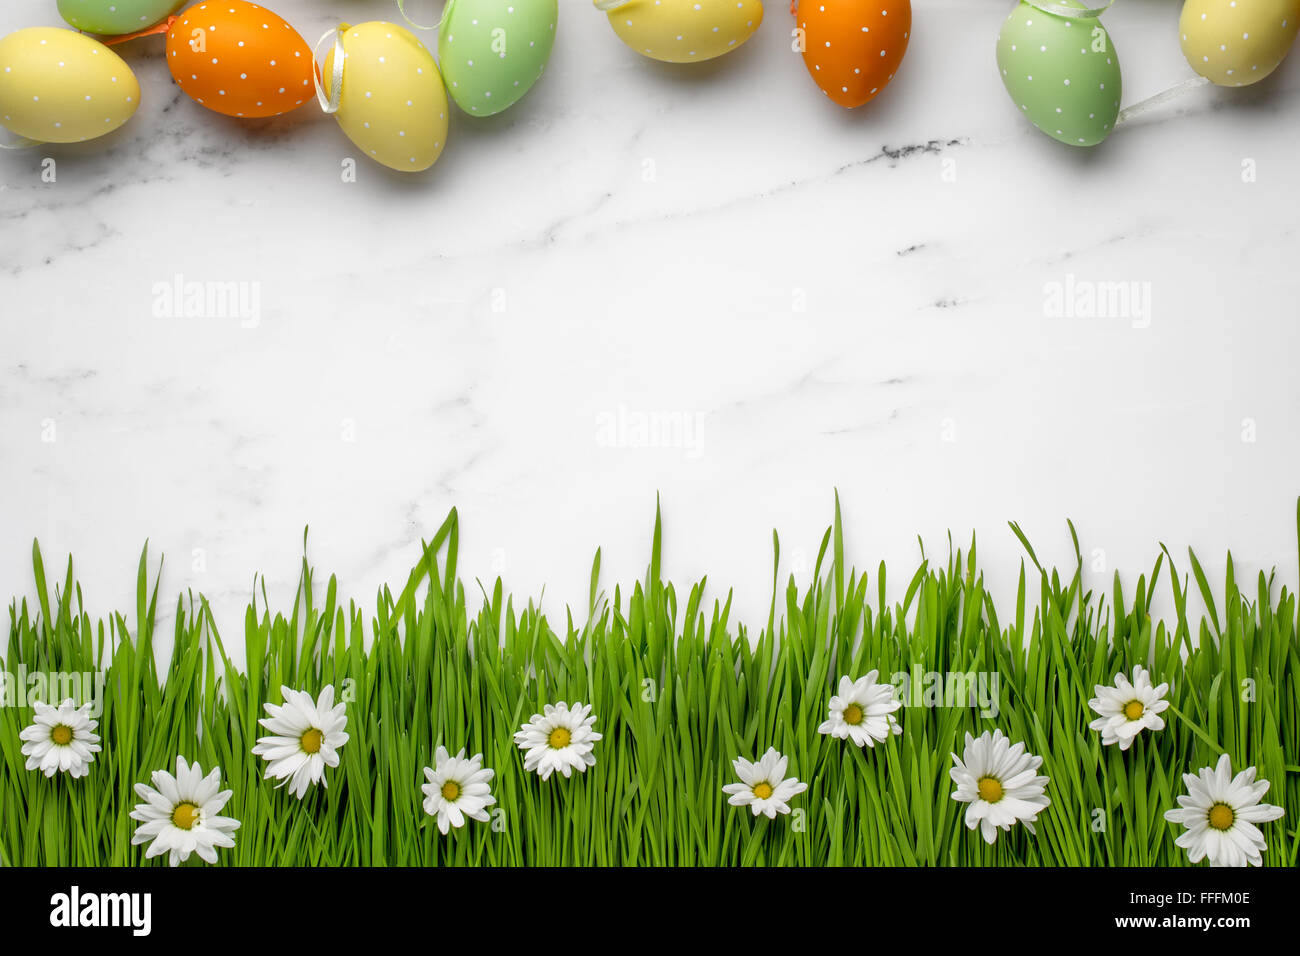 Ostern Eiern, grünen Rasen mit Daisy Blume auf Marmor Hintergrund Stockfoto